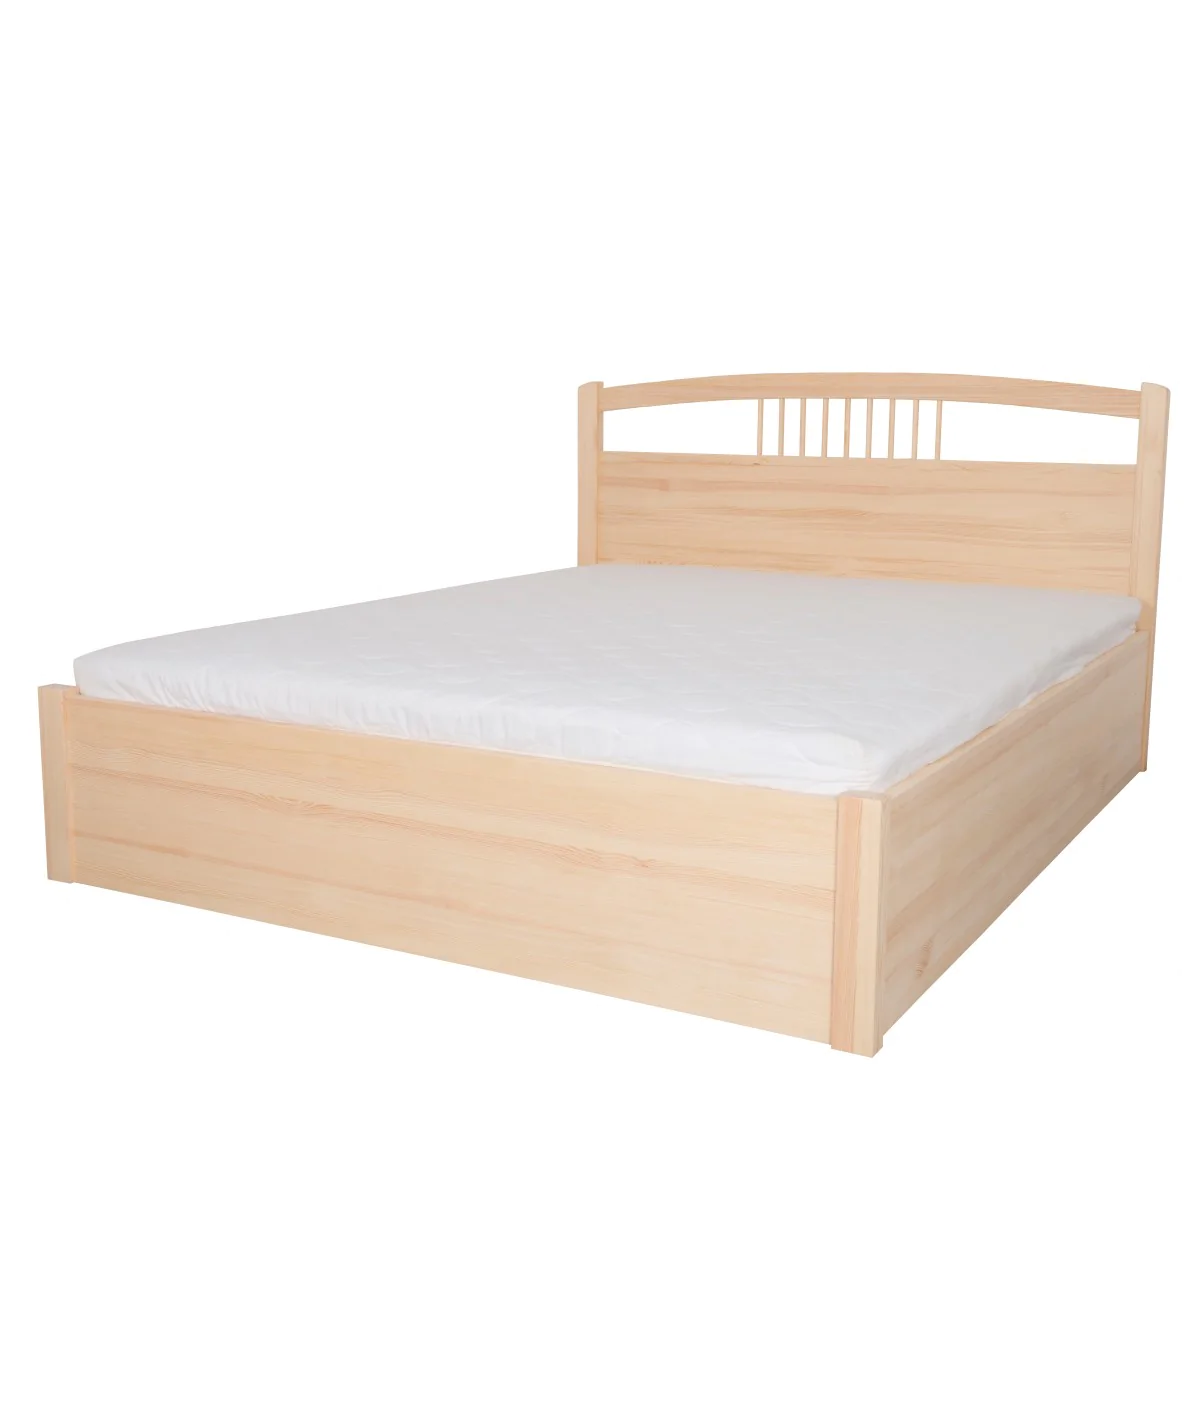 Łóżko sosnowe NEFRYT 4 STOLMIS podnoszone na ramie drewnianej